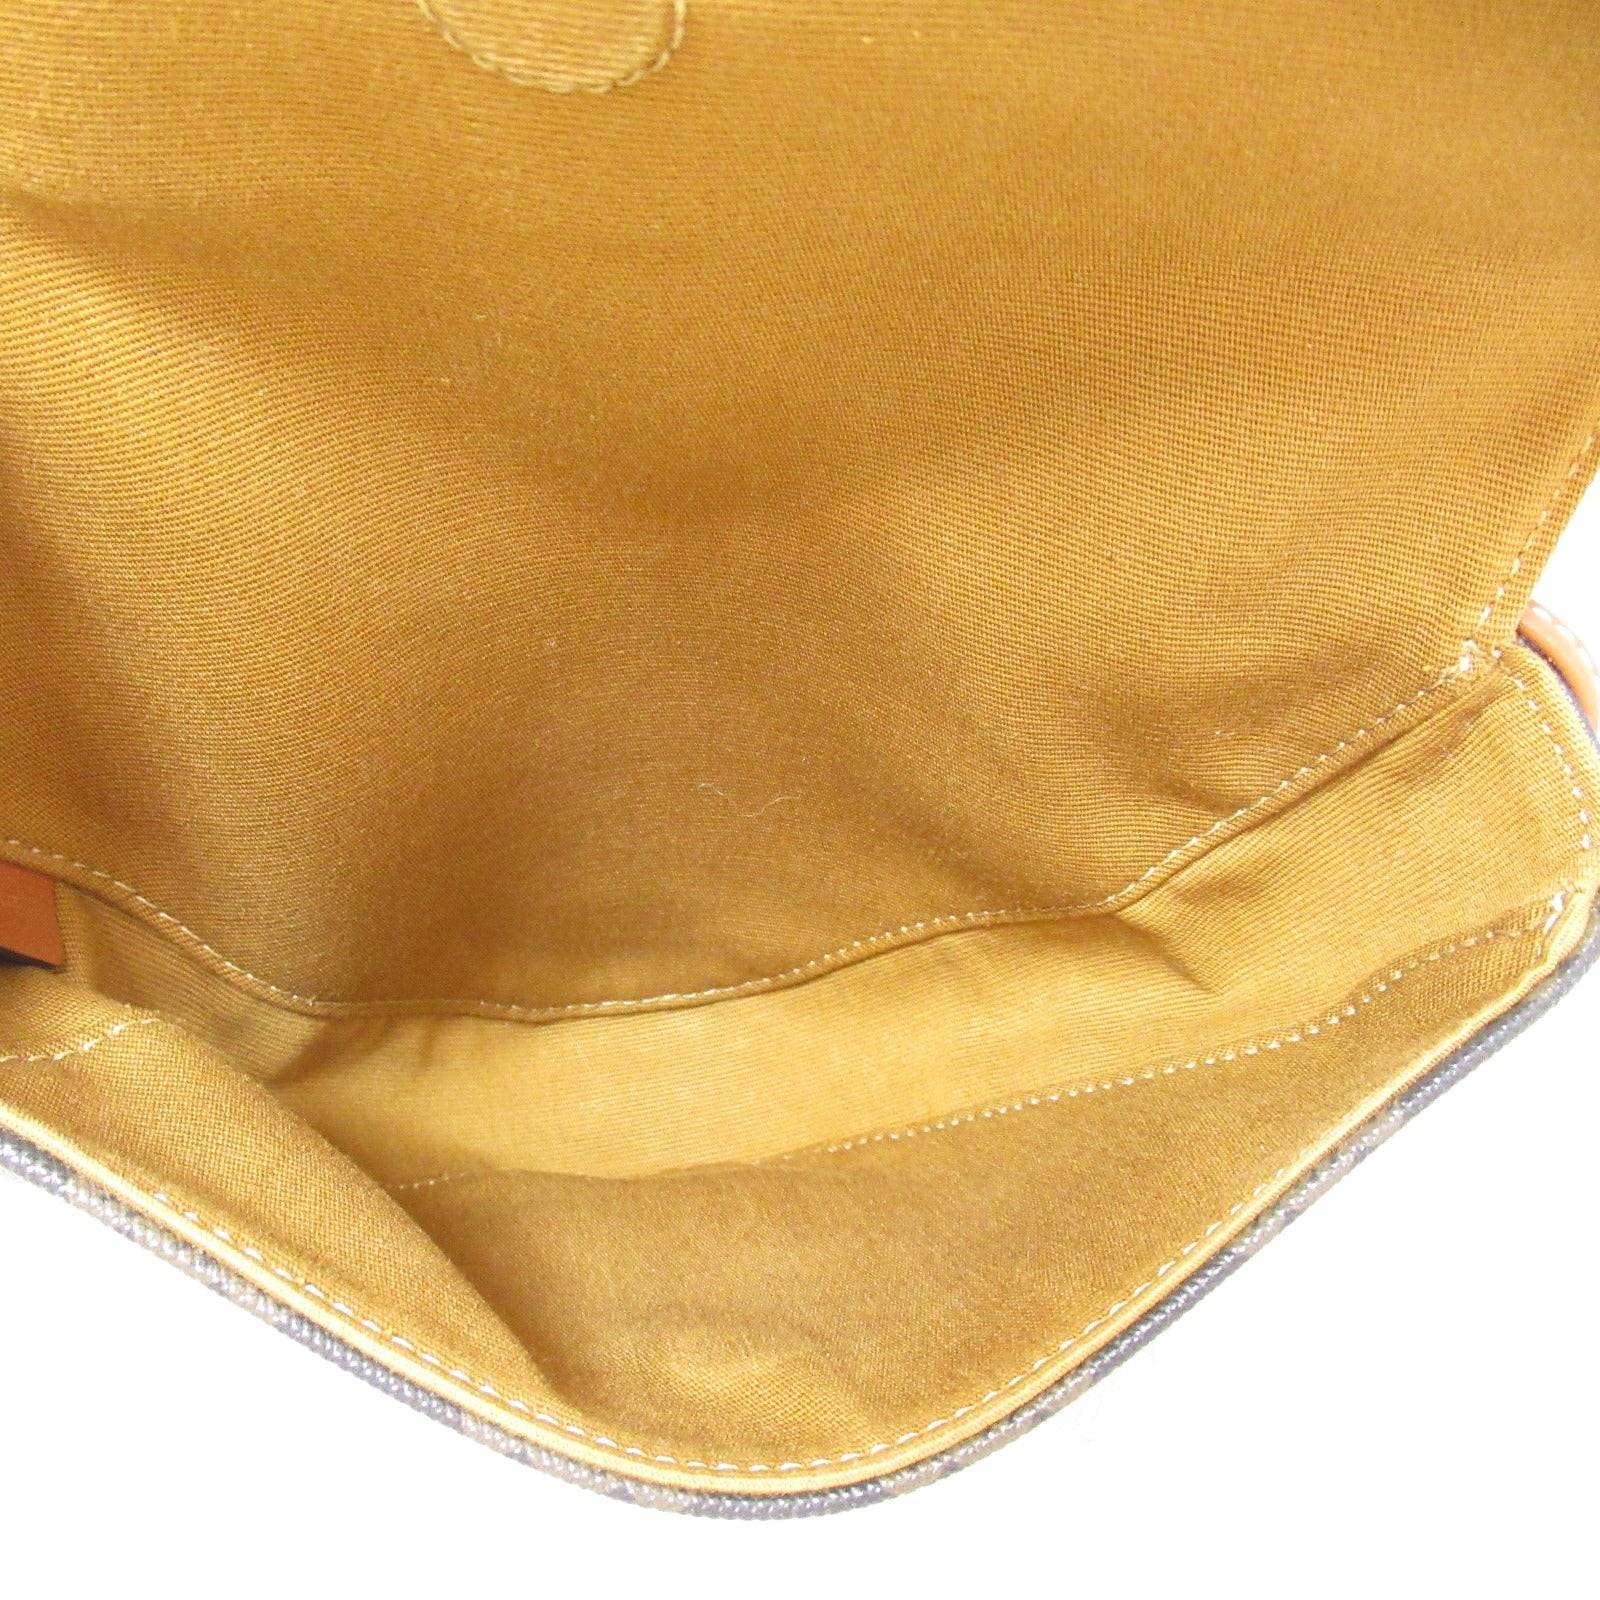 Celine Triangle Shoulder Bag Triangle Shoulder Bag Triangle Shoulder Bag Triangle Shoulder Bag Triangle Shoulder Bag Triangle Shoulder Bag Triangle Shoulder Bag Triangle Shoulder Bag Triangle Shoulder Bag